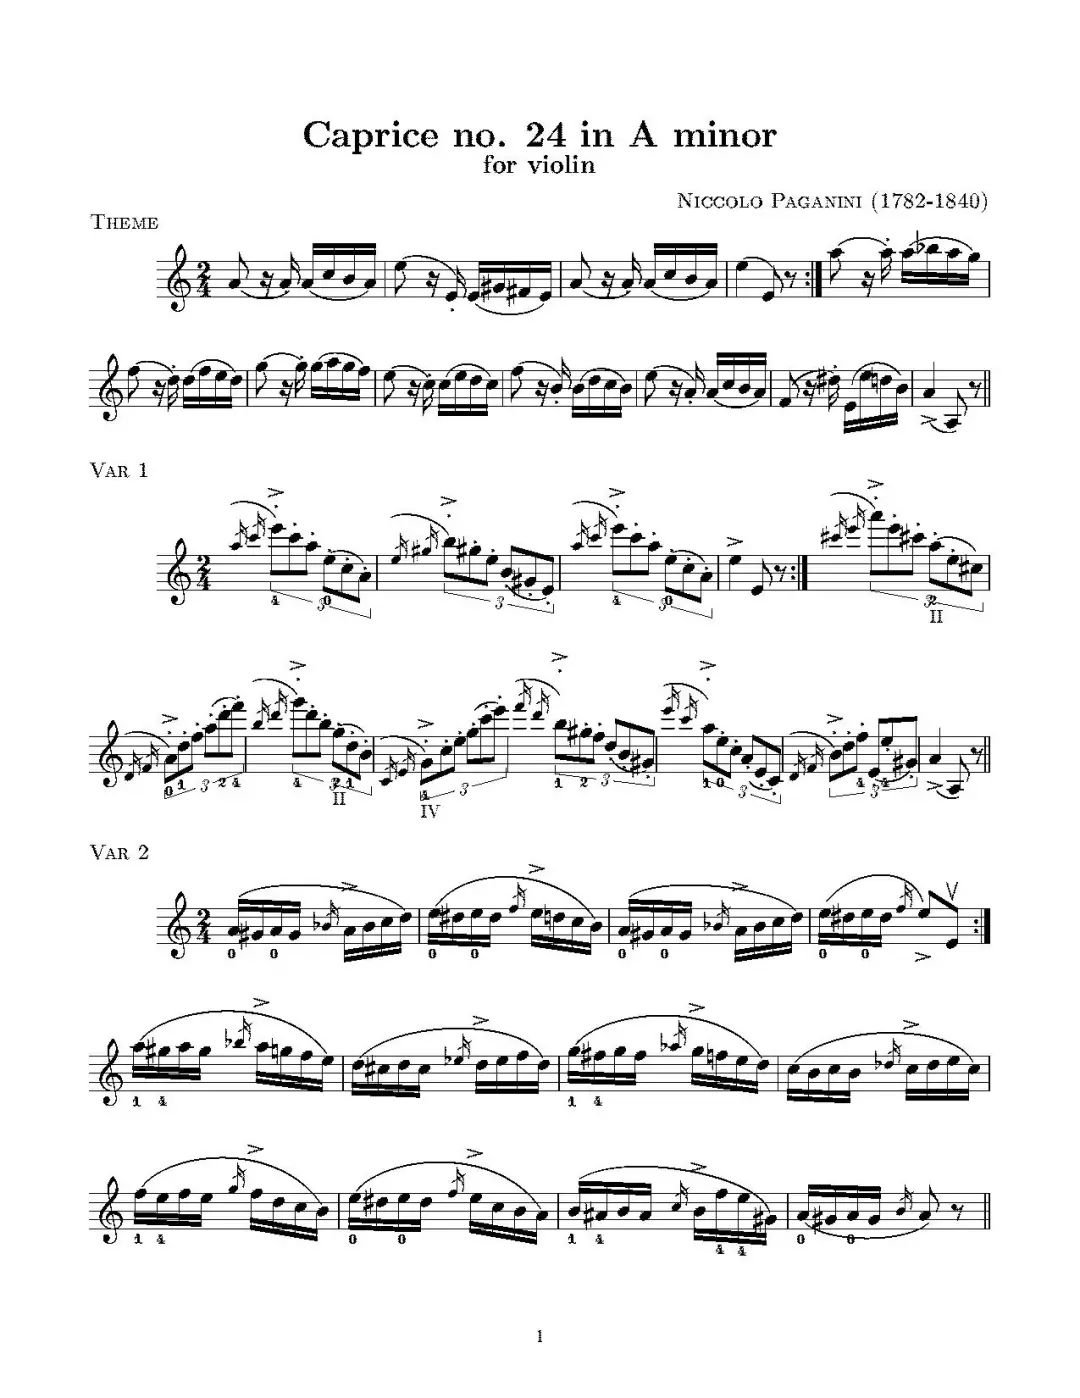 24帕格尼尼小提琴随想曲